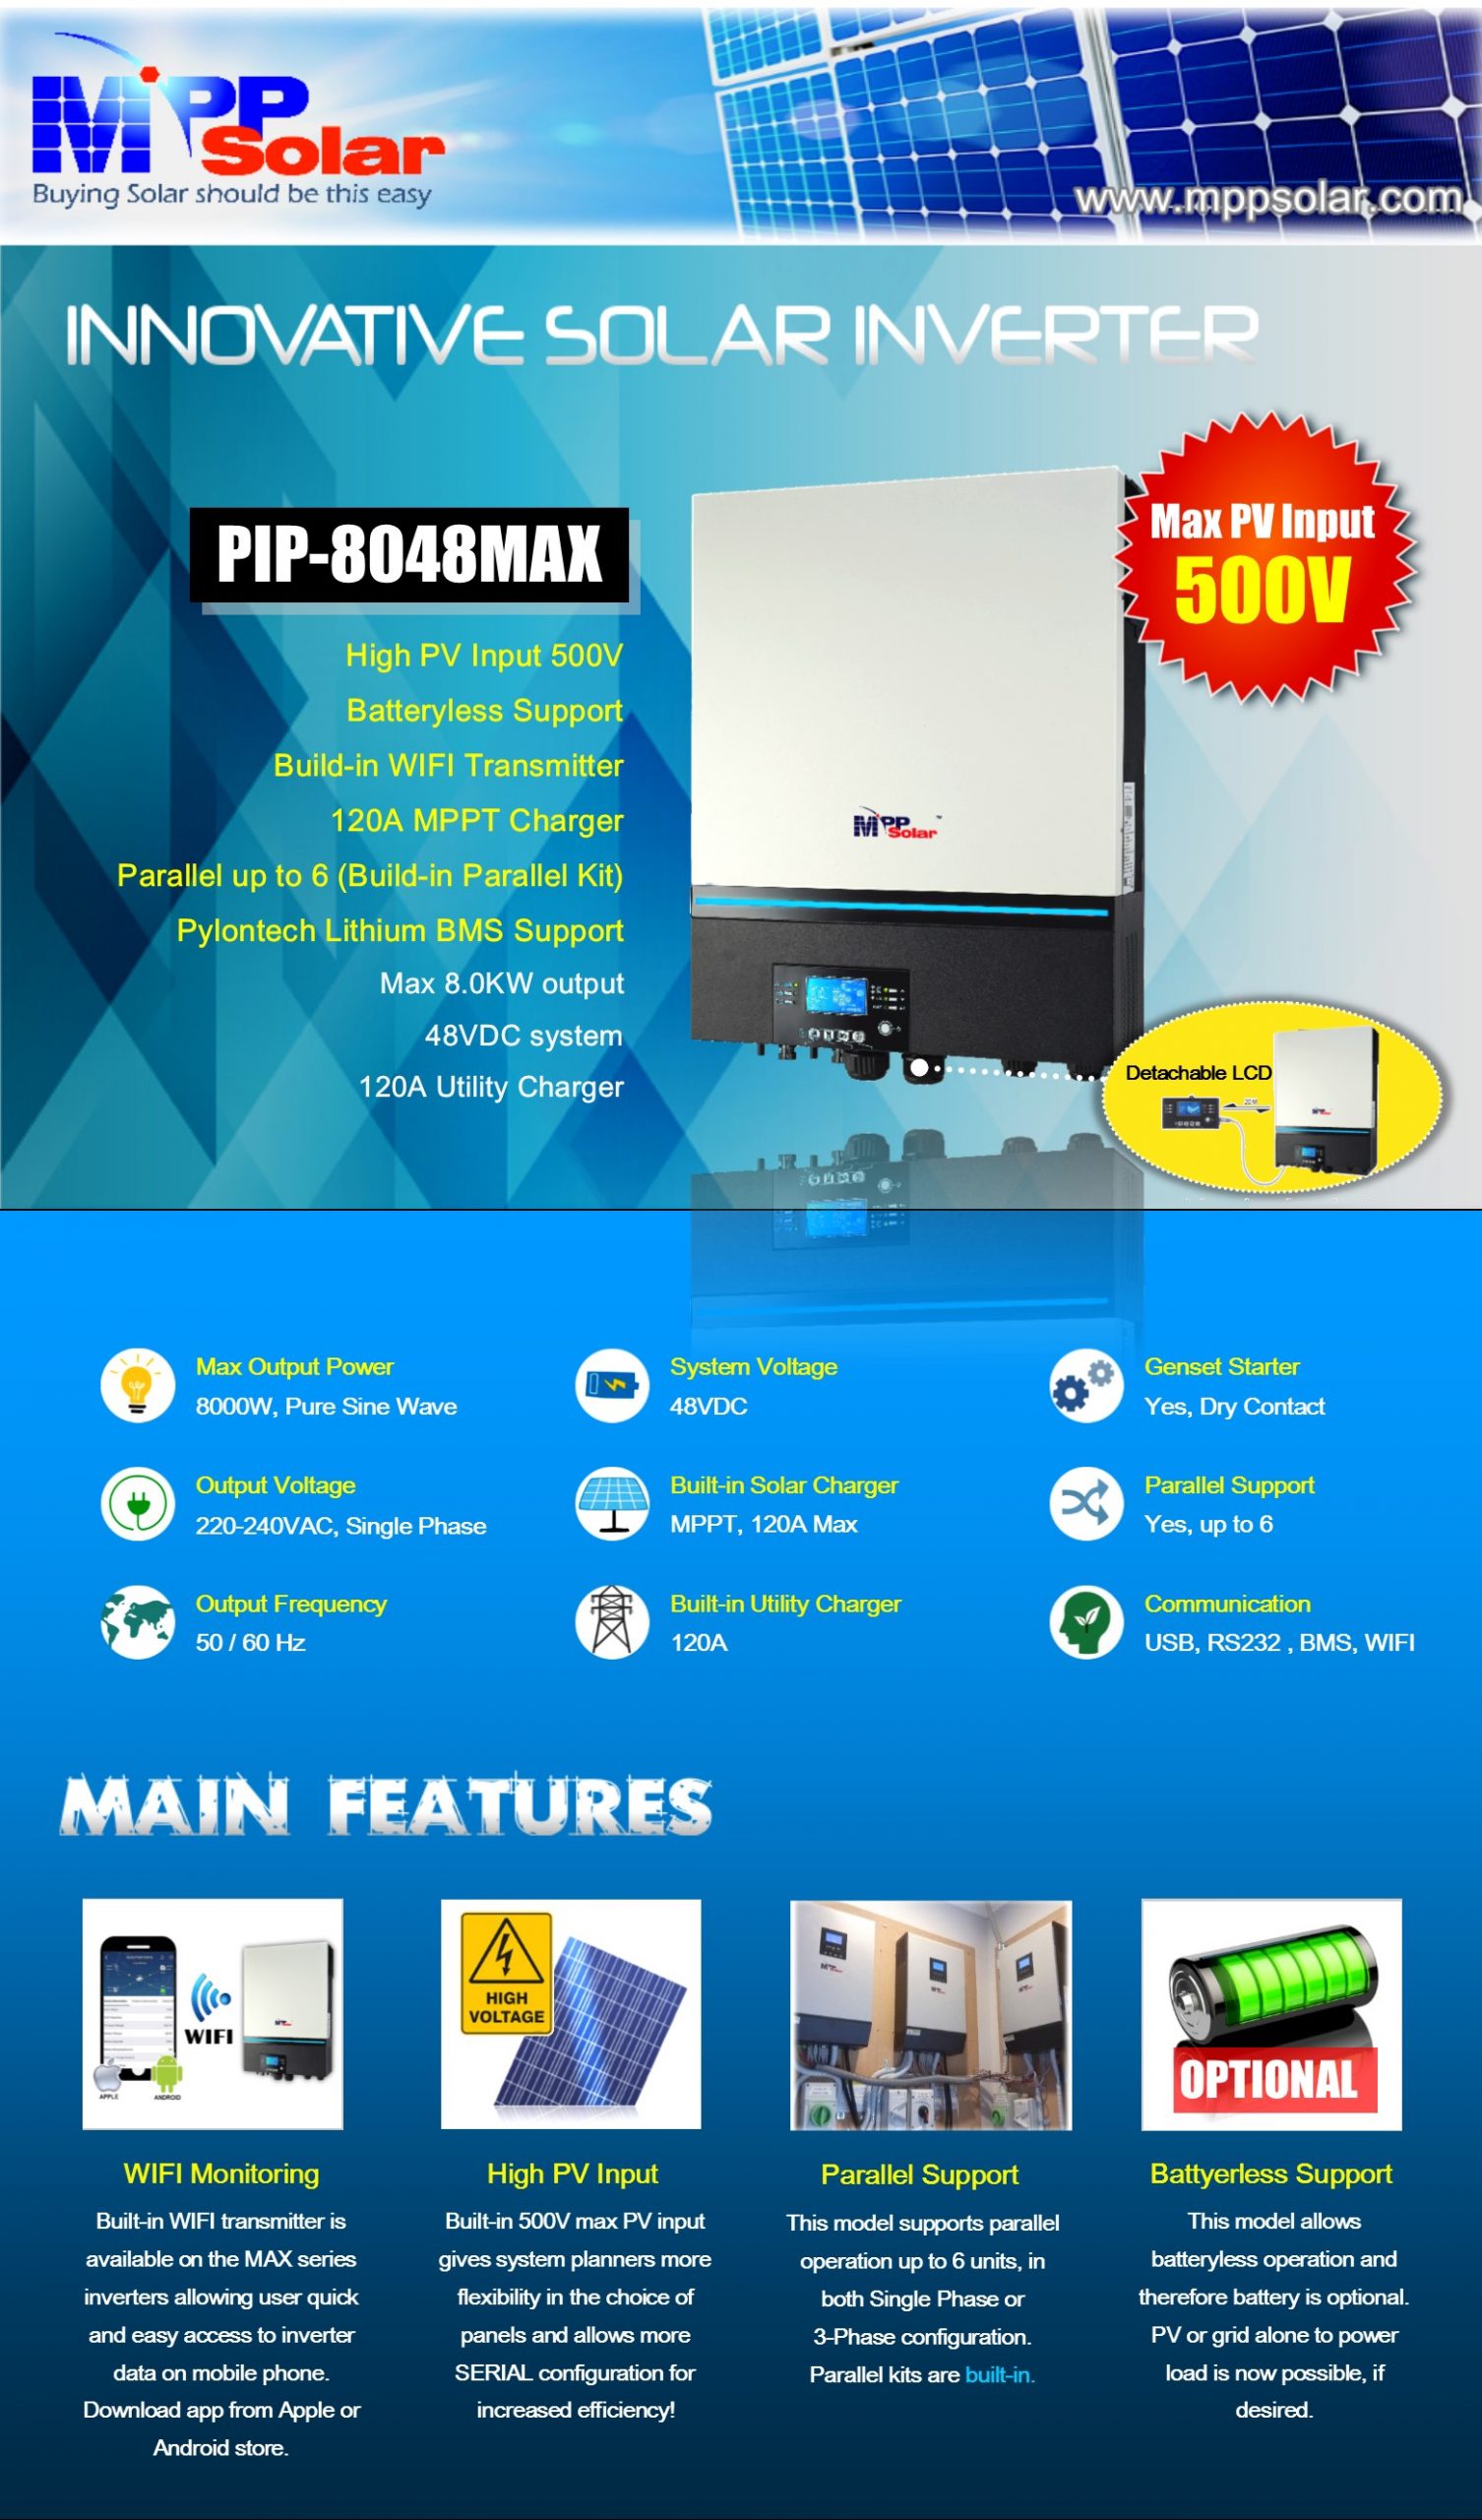 MPP+Solar+LV6548+Solar+Inverter for sale online